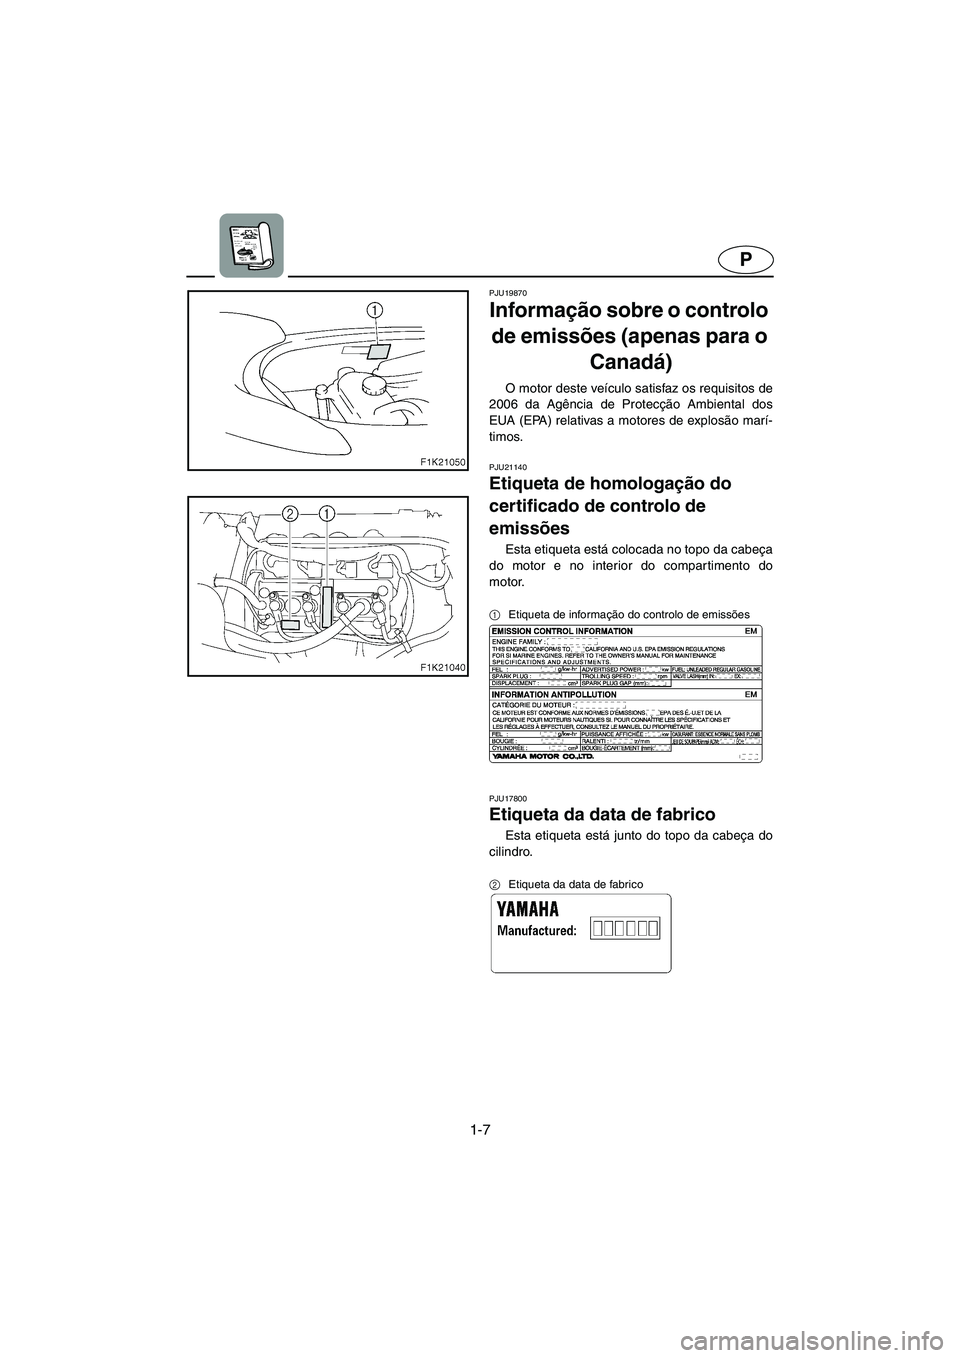 YAMAHA VX 2006  Manual de utilização (in Portuguese) 1-7
P
PJU19870
Informação sobre o controlo 
de emissões (apenas para o 
Canadá) 
O motor deste veículo satisfaz os requisitos de
2006 da Agência de Protecção Ambiental dos
EUA (EPA) relativas 